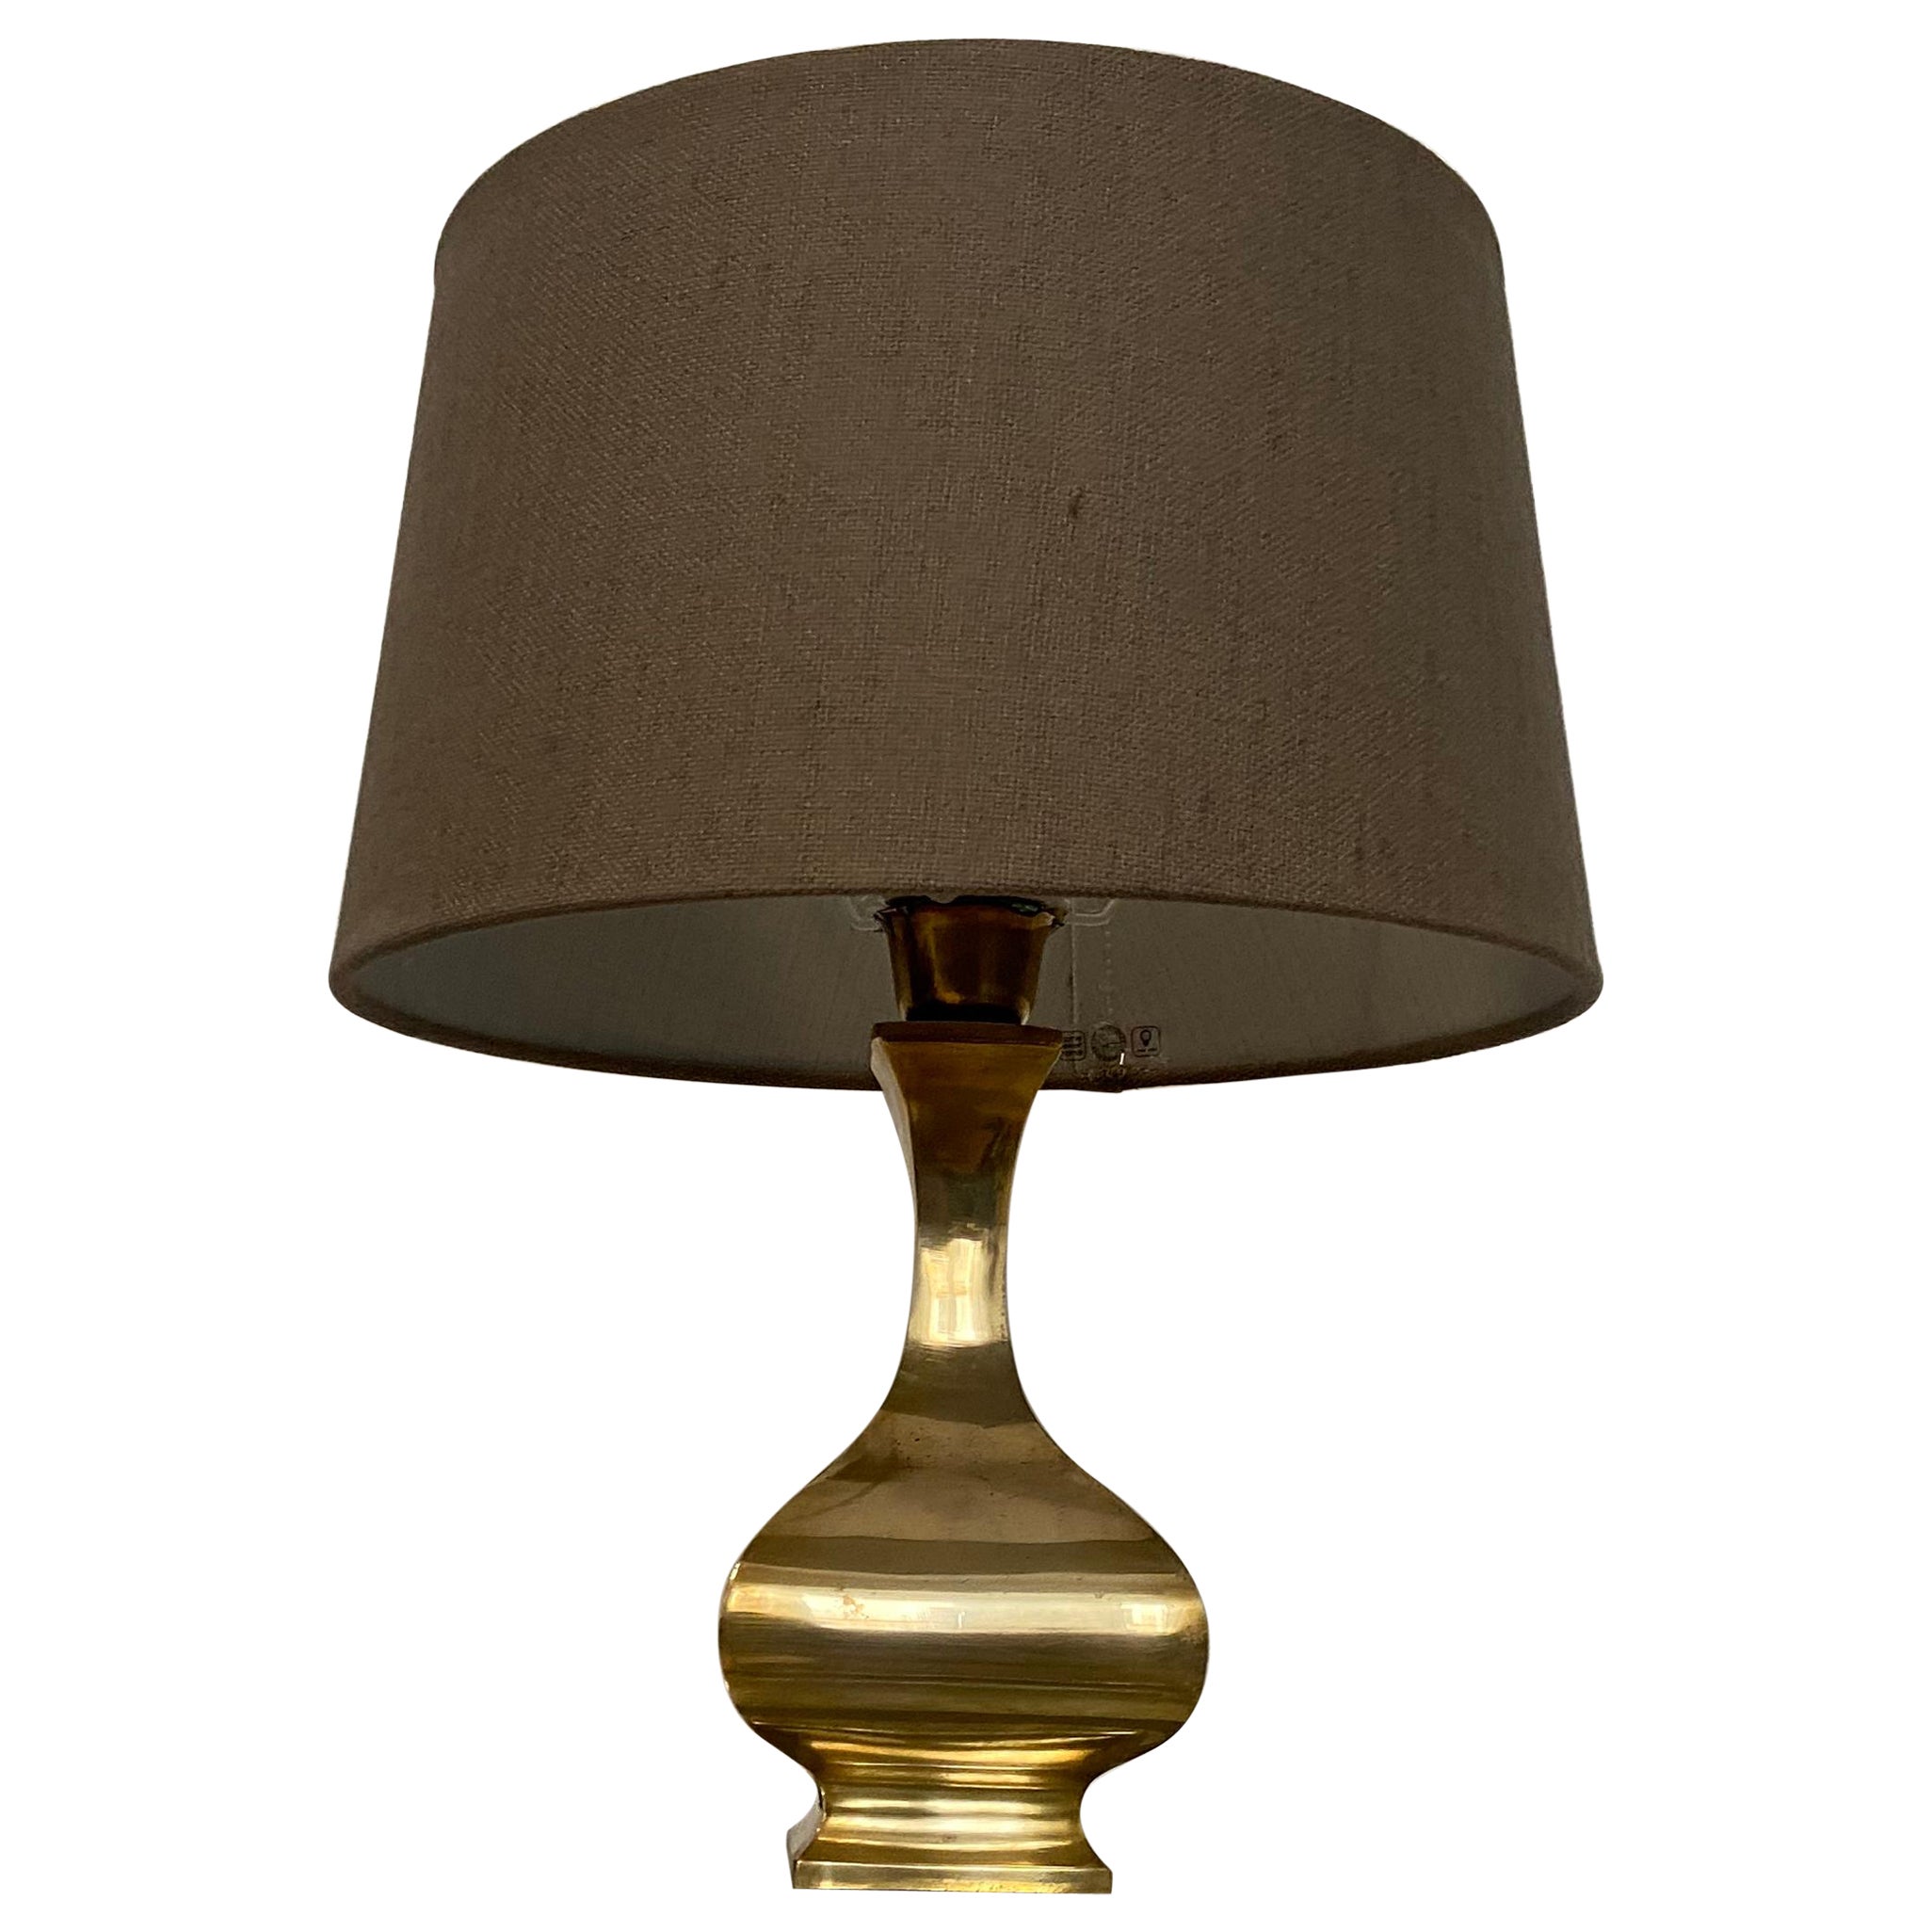 Lampe aus Messing im Stil von Maria Pergay, hergestellt in den 70er Jahren